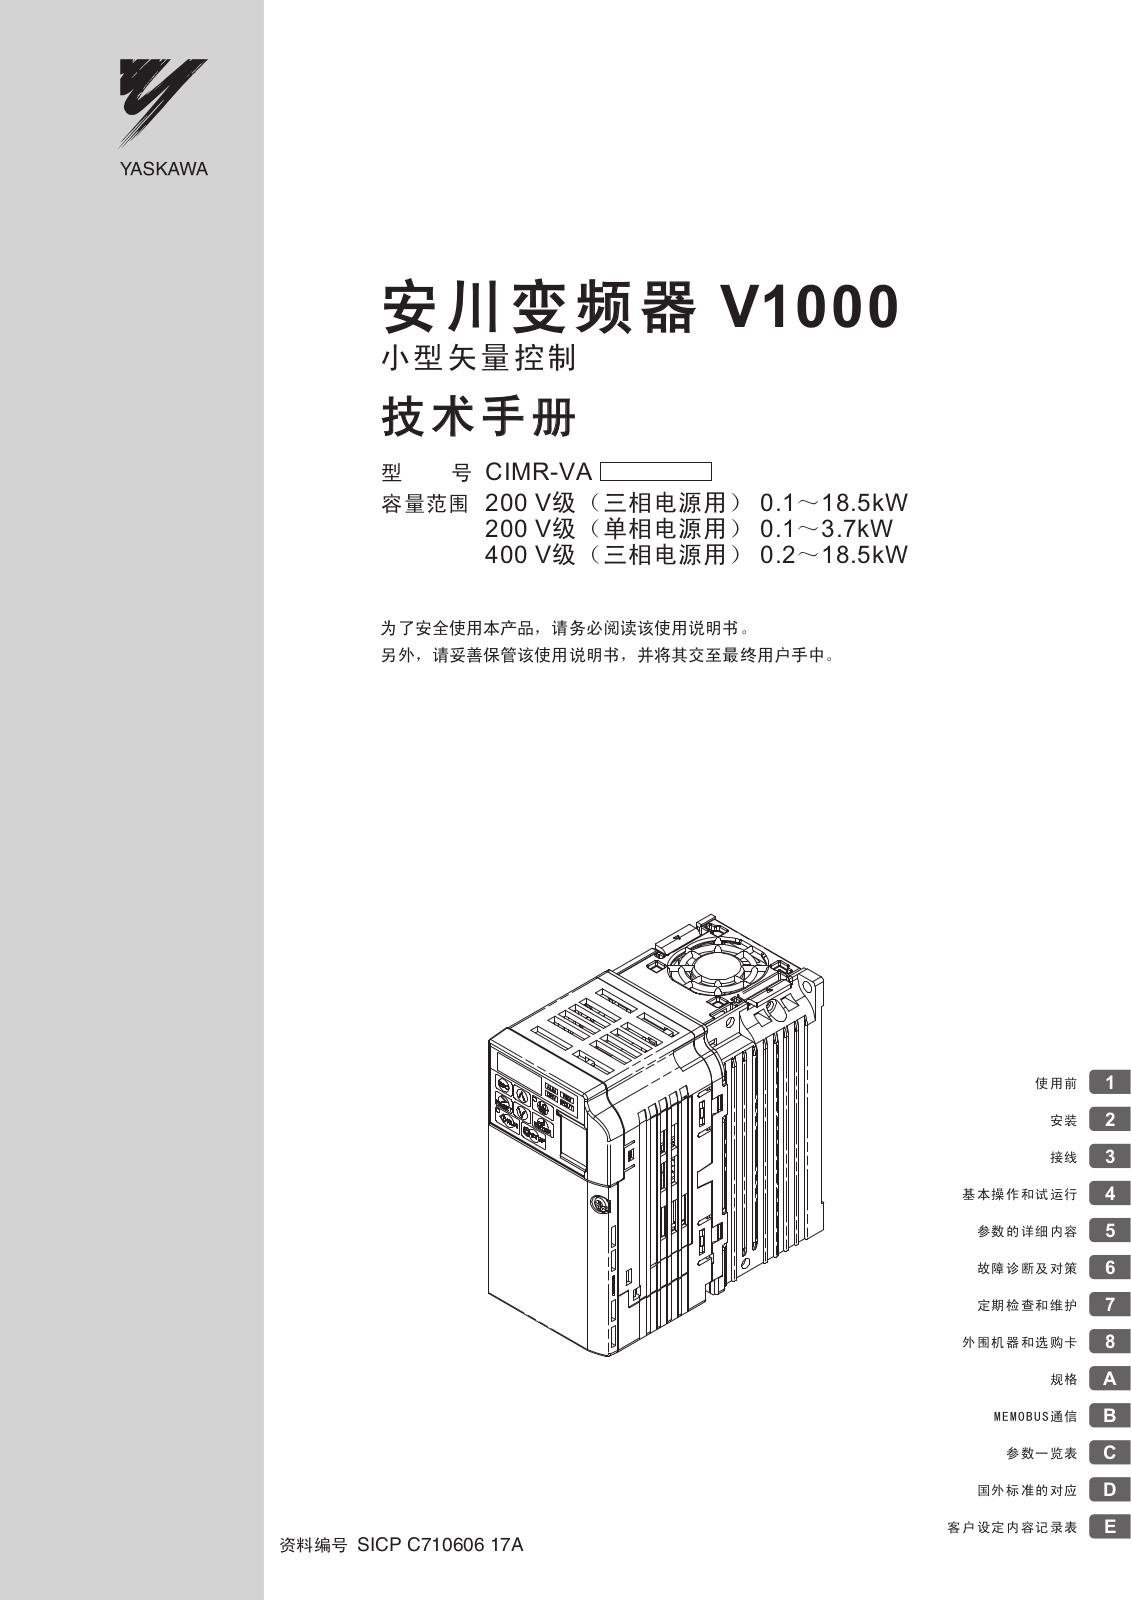 YASKAWA V1000 User Manual